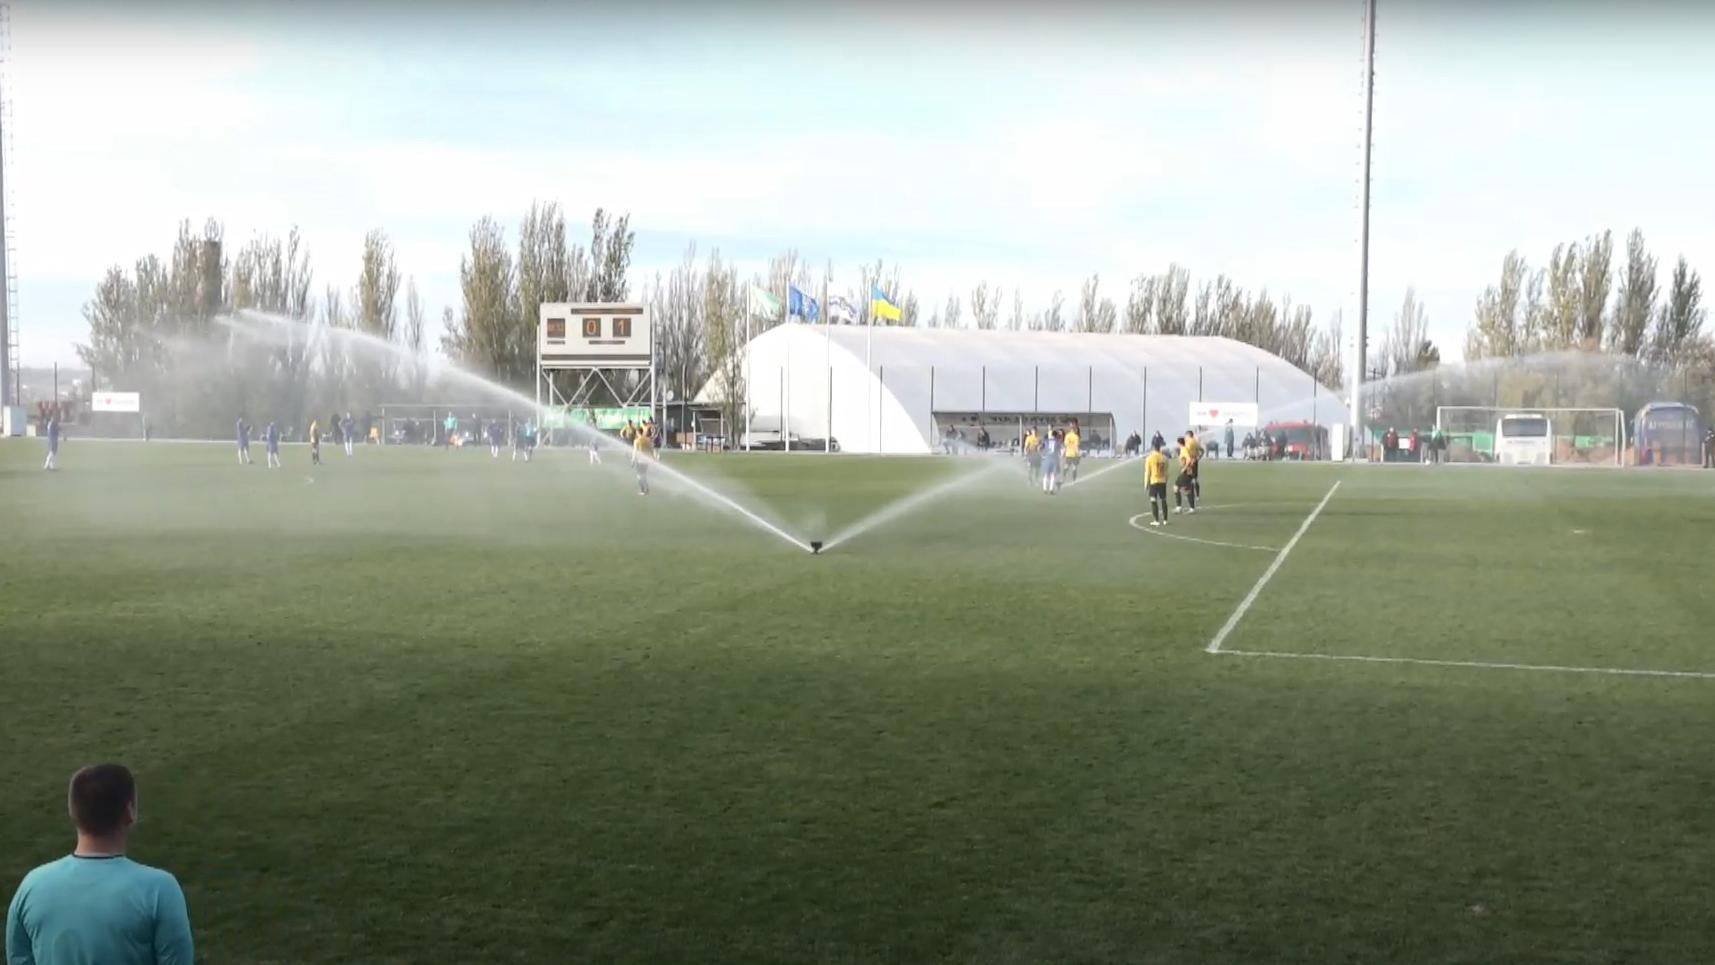 Холодний душ для футболістів: під час матчу в Першій лізі неочікувано включився полив поля